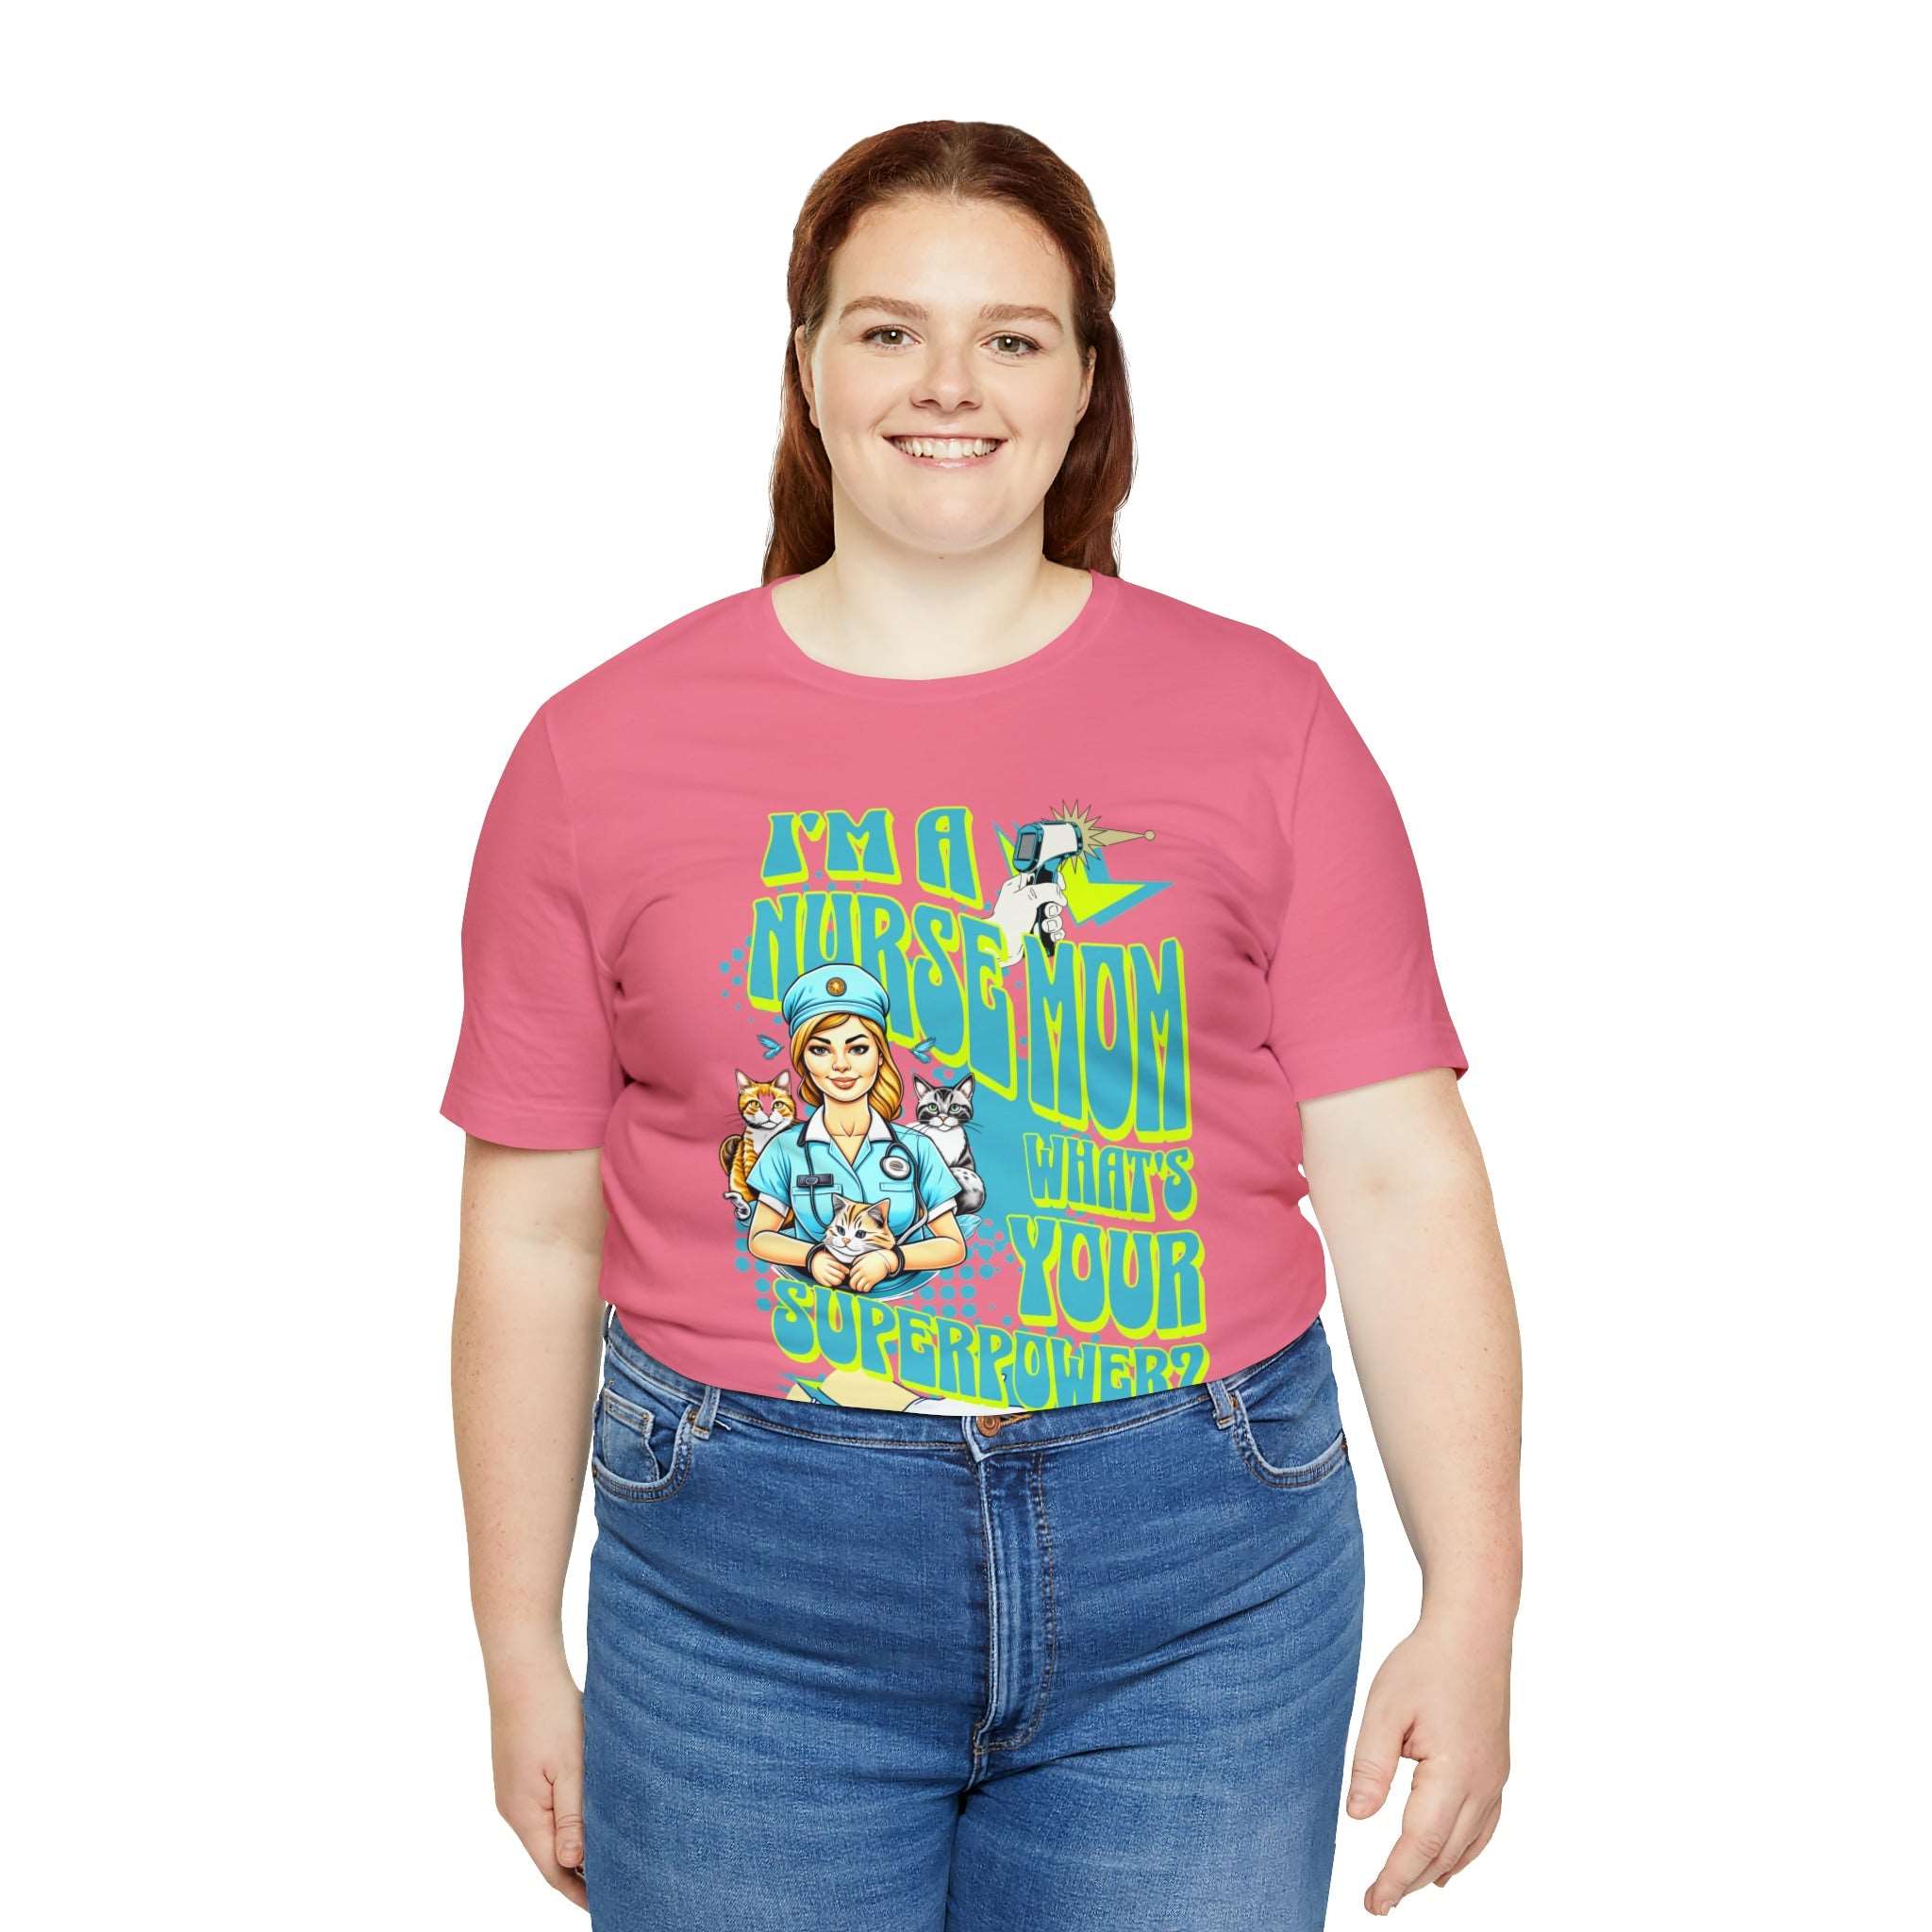 I Am A Mom and A Nurse Funny T-shirt - RN Nurse Gift - MTL Dynamic StylesT-Shirt